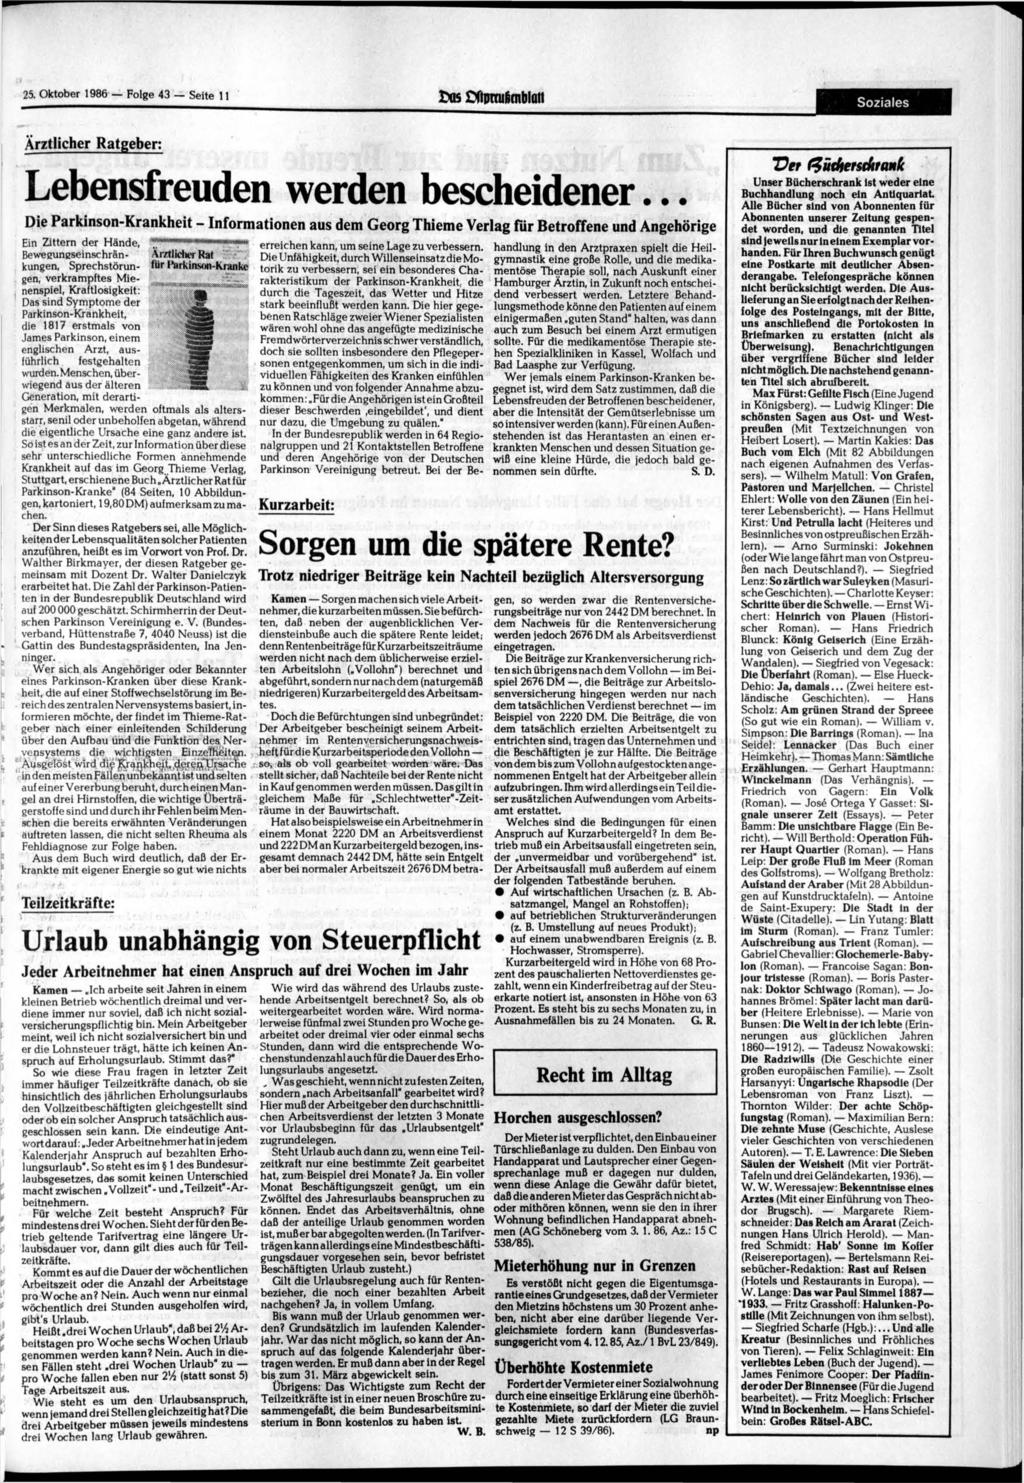 25. 1986 Folge 43 Seite 11 fcos Cftproiicnblatt Soziales Ärztlicher Ratgeber: Lebensfreuden werden bescheidener.